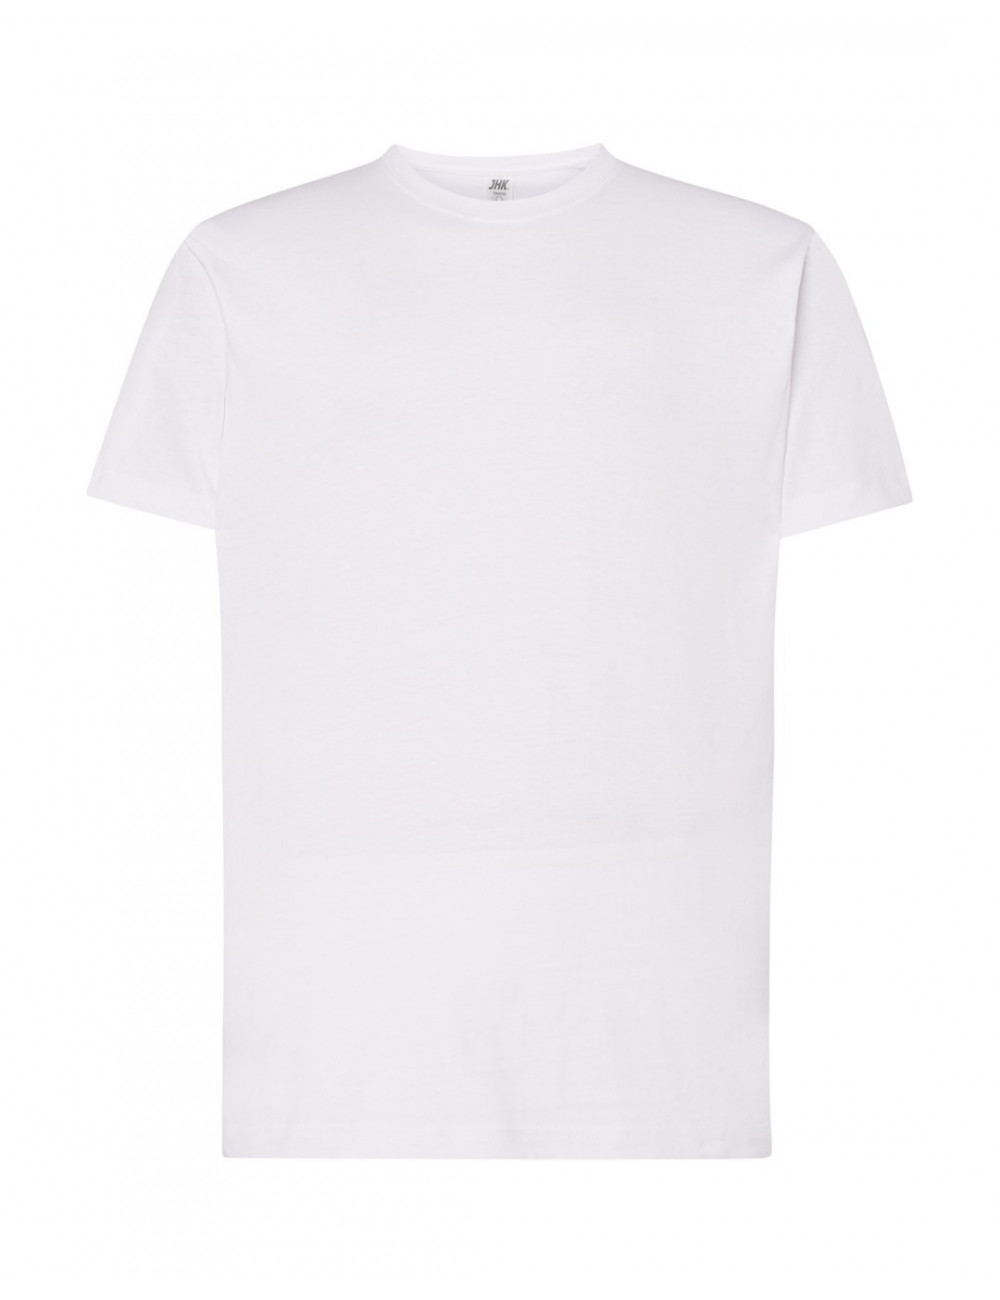 Men`s tsua 150 slim fit t-shirt white Jhk